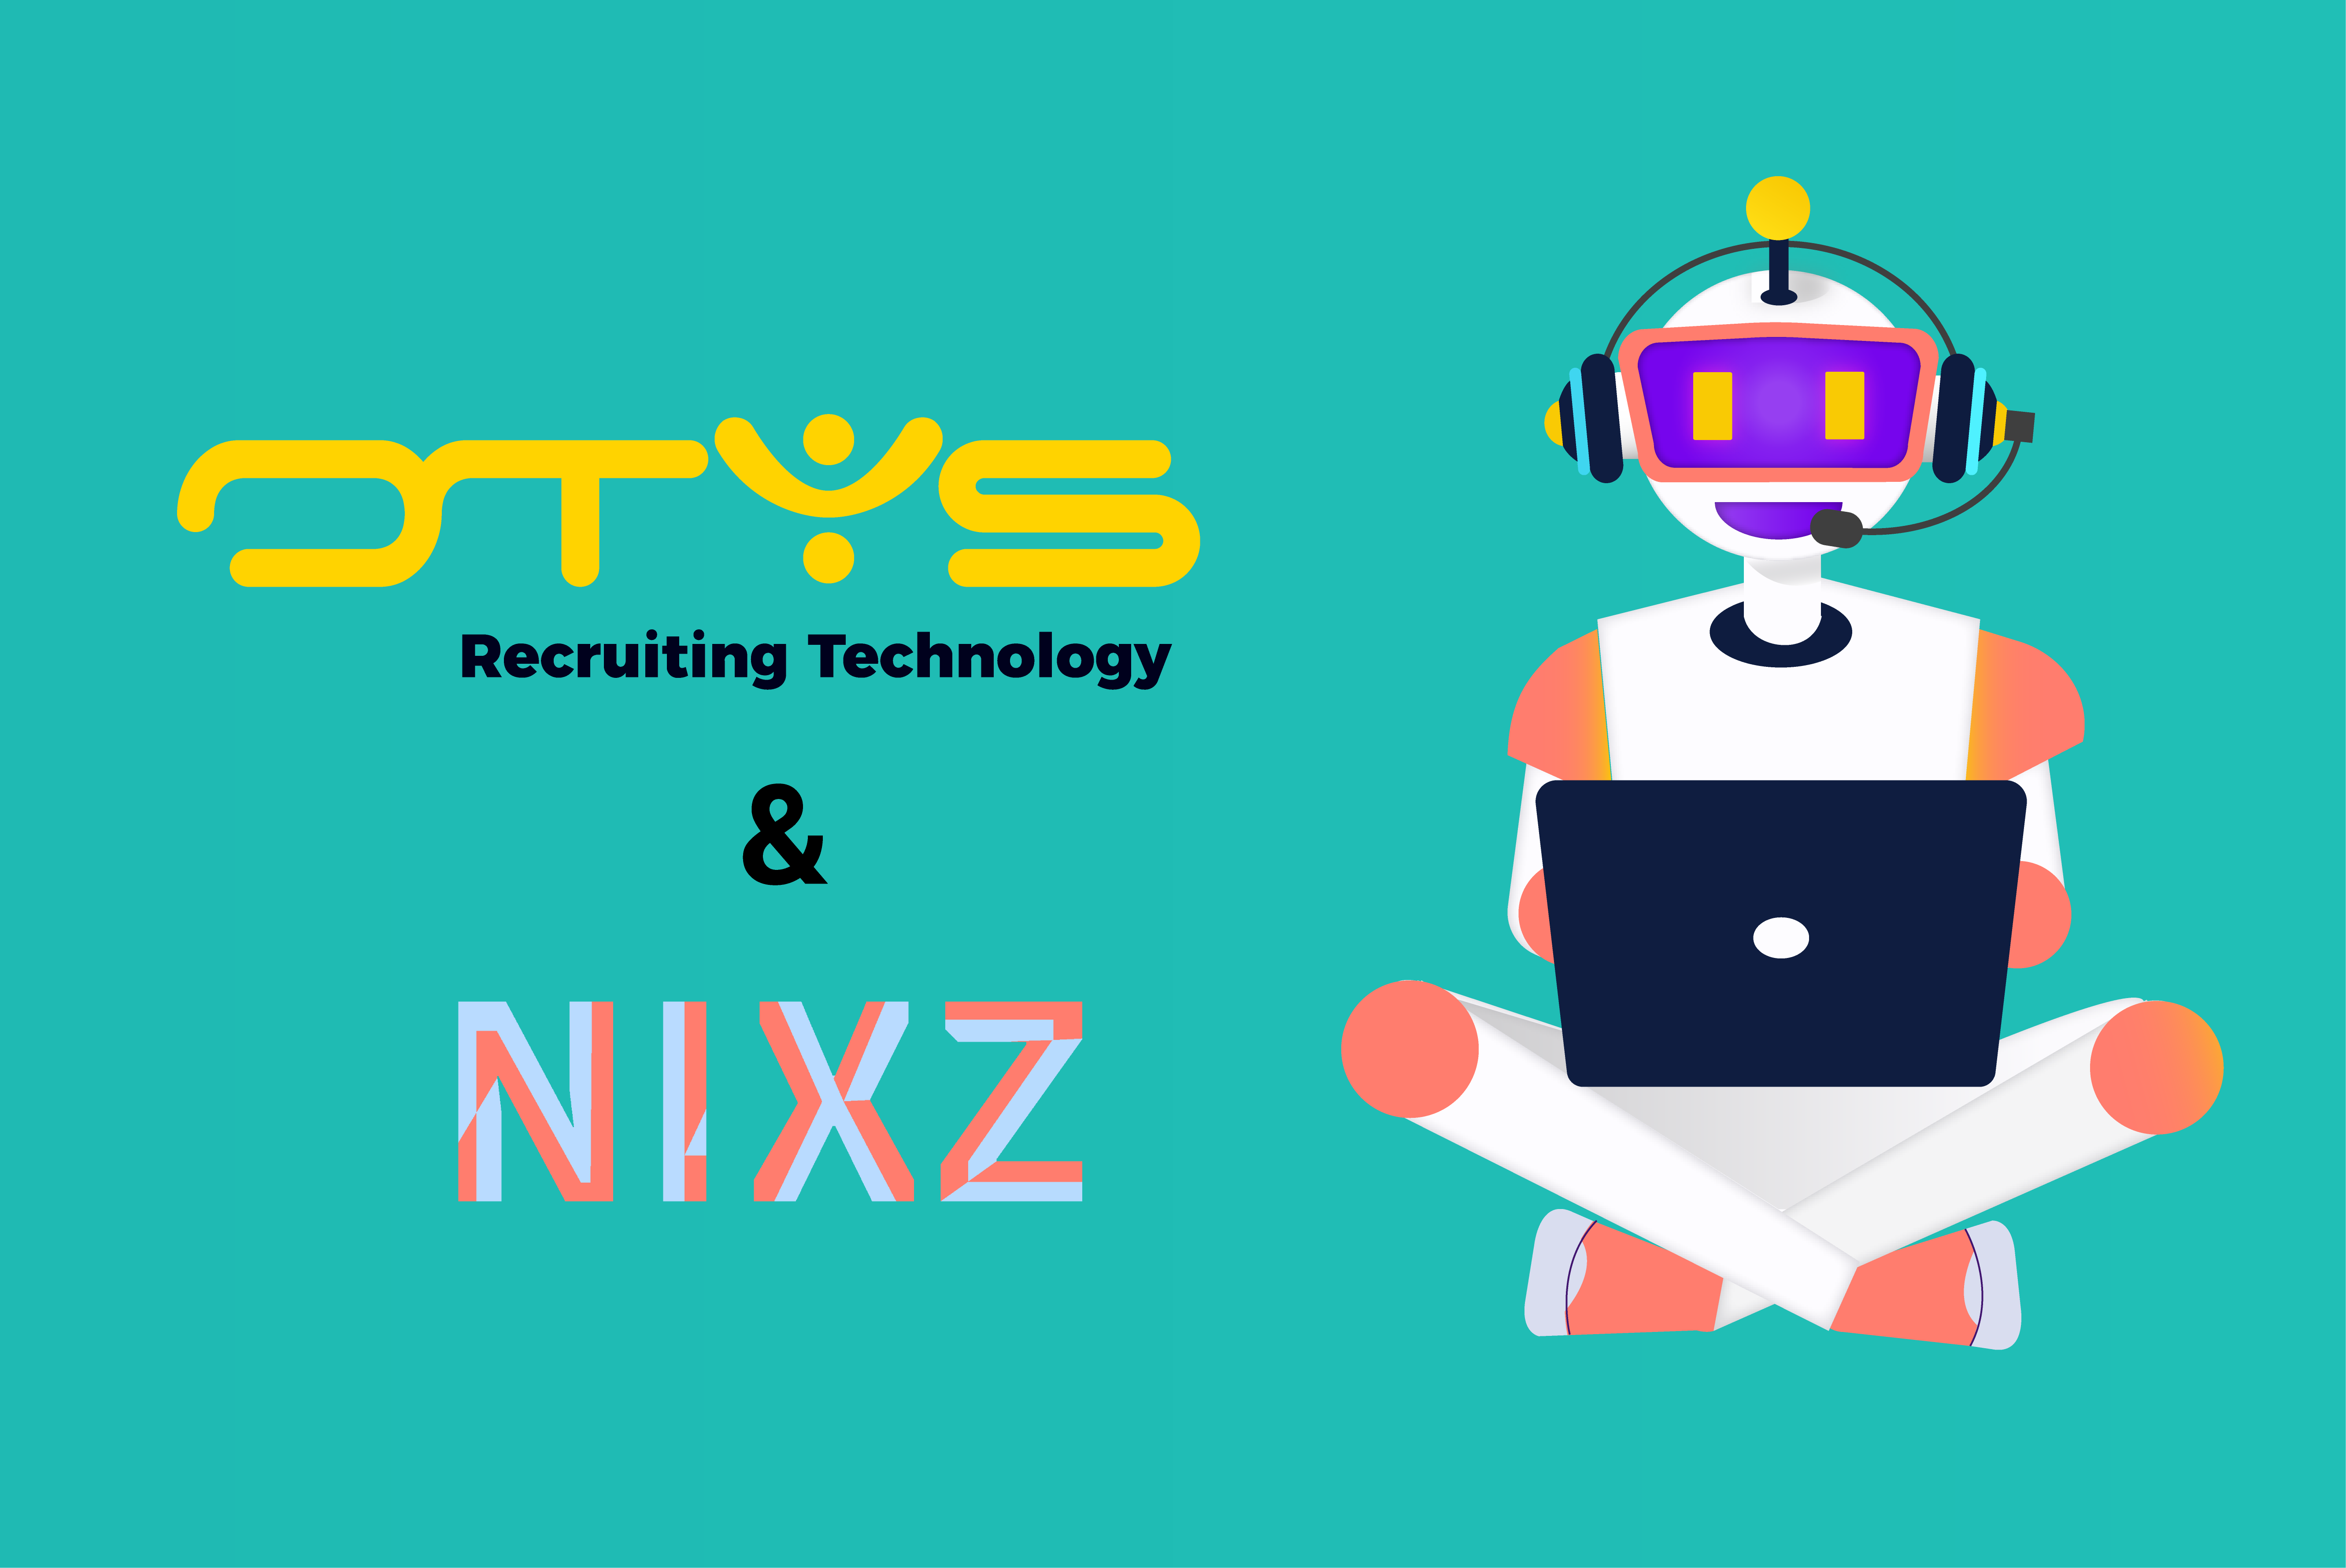 NIXZ start samenwerking met OTYS